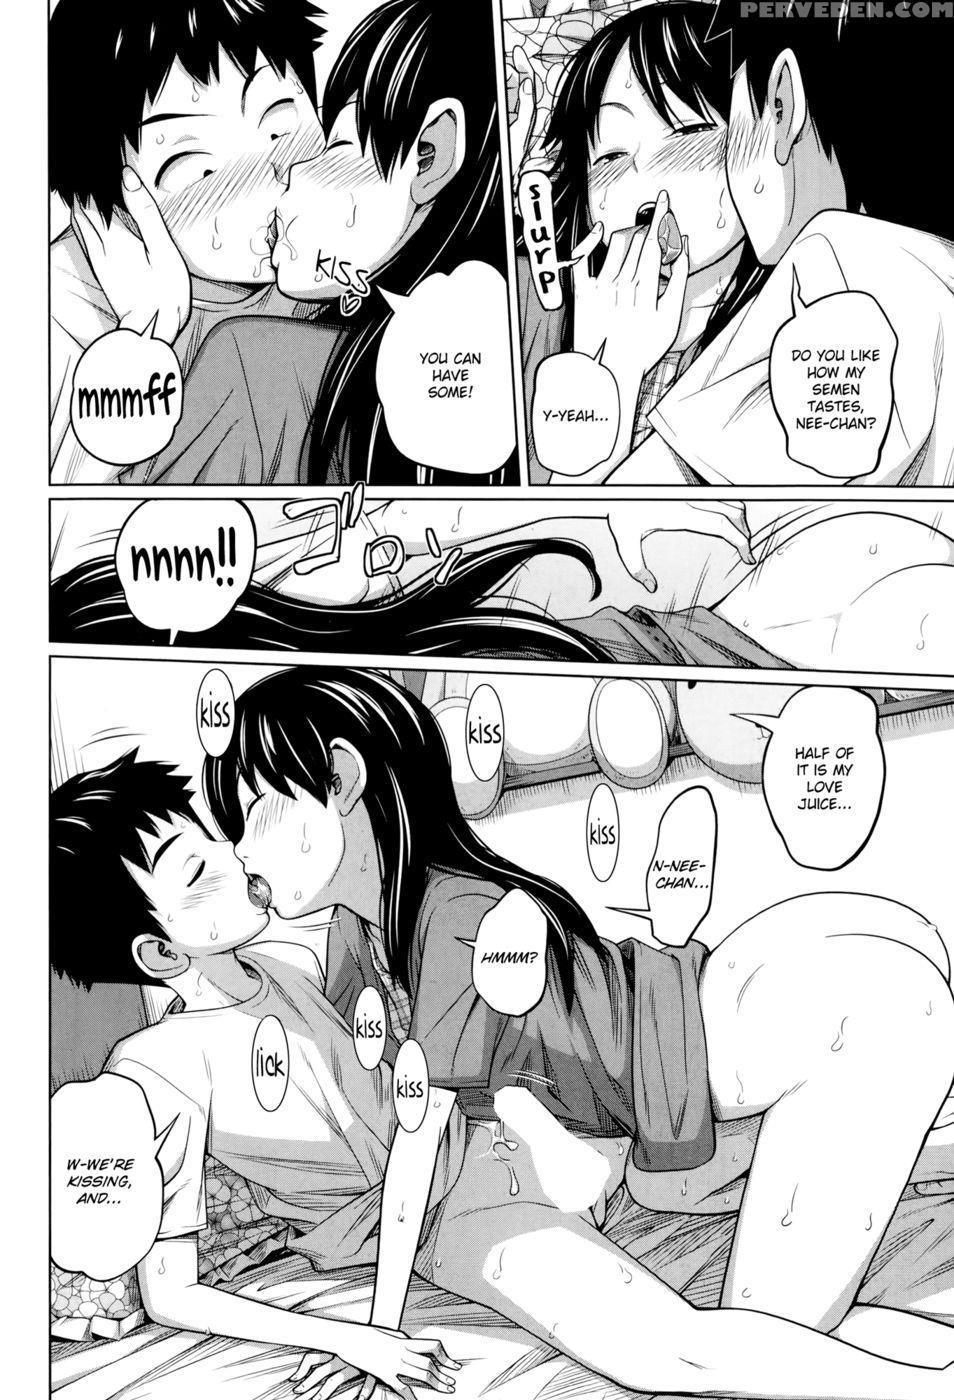 Sex manga 